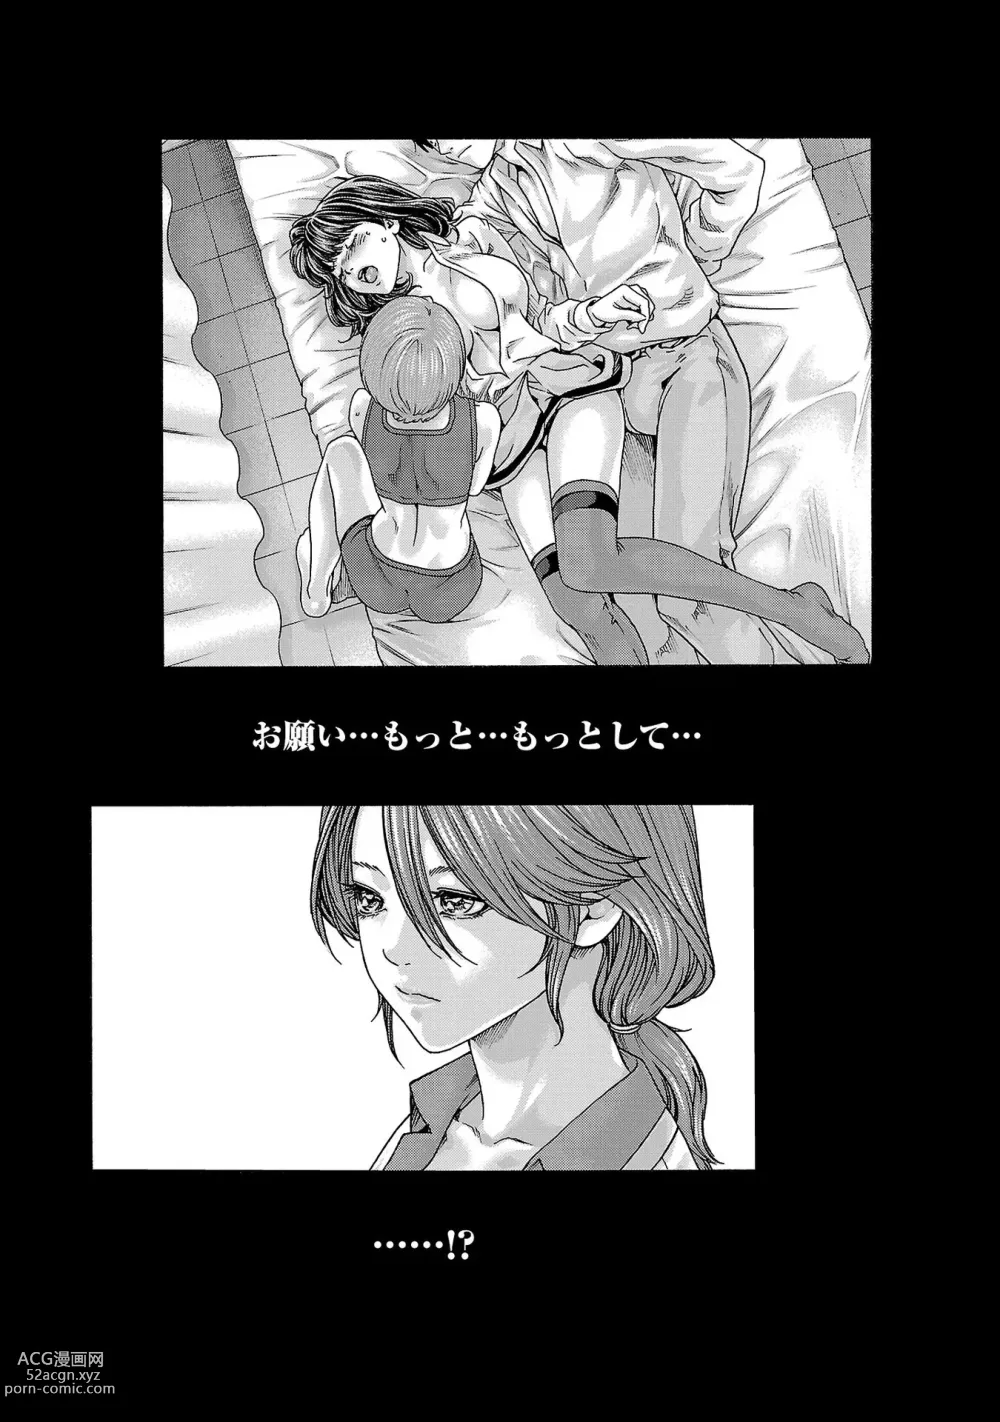 Page 199 of manga sense volume 13